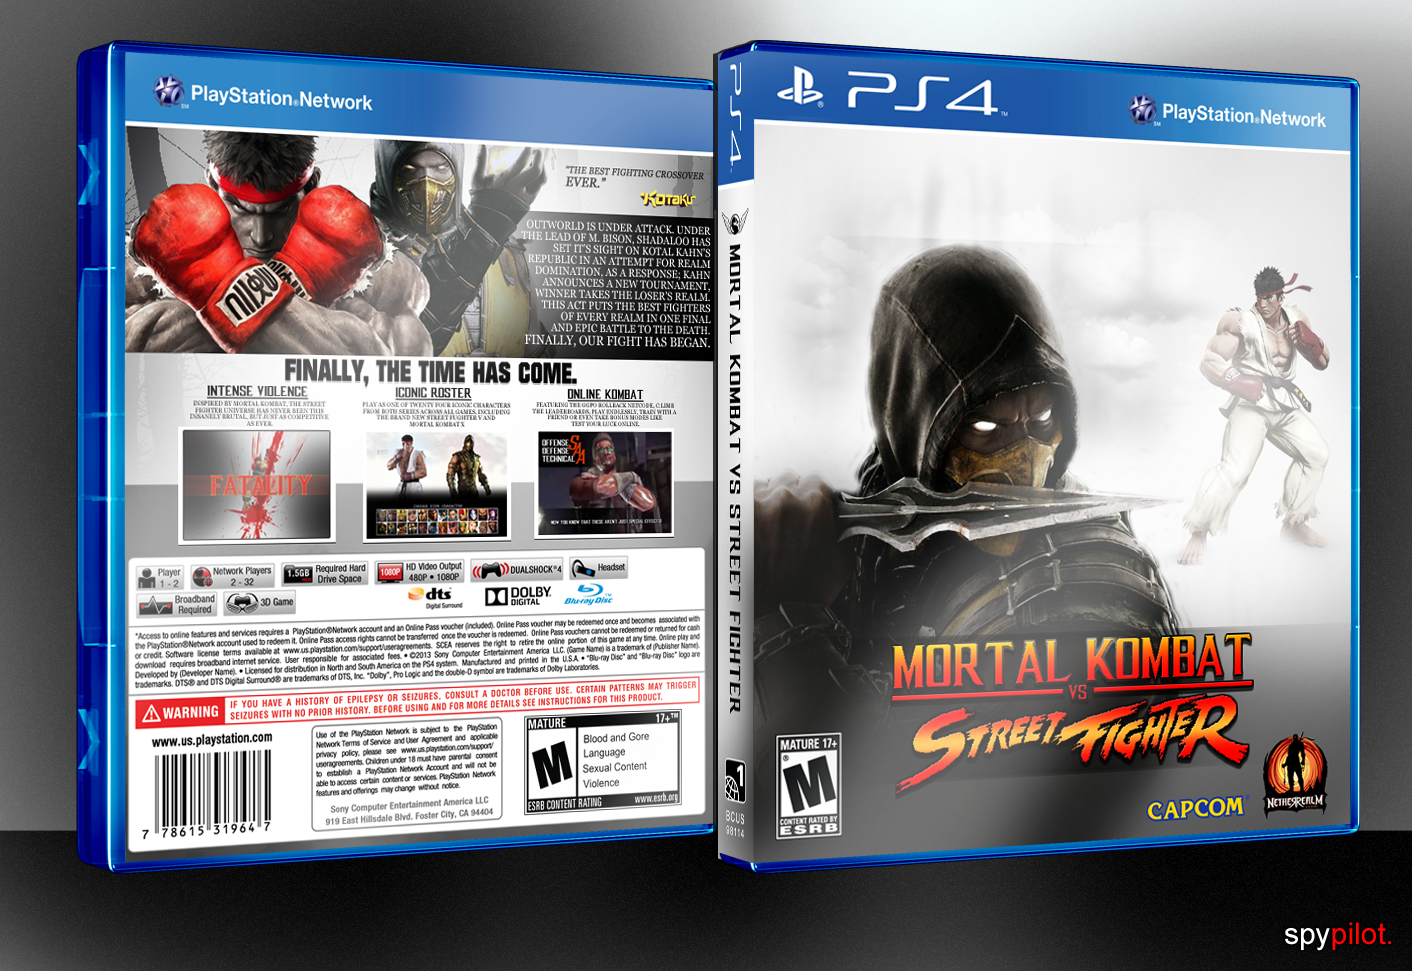 Mortal Kombat vs Street Fighter box cover